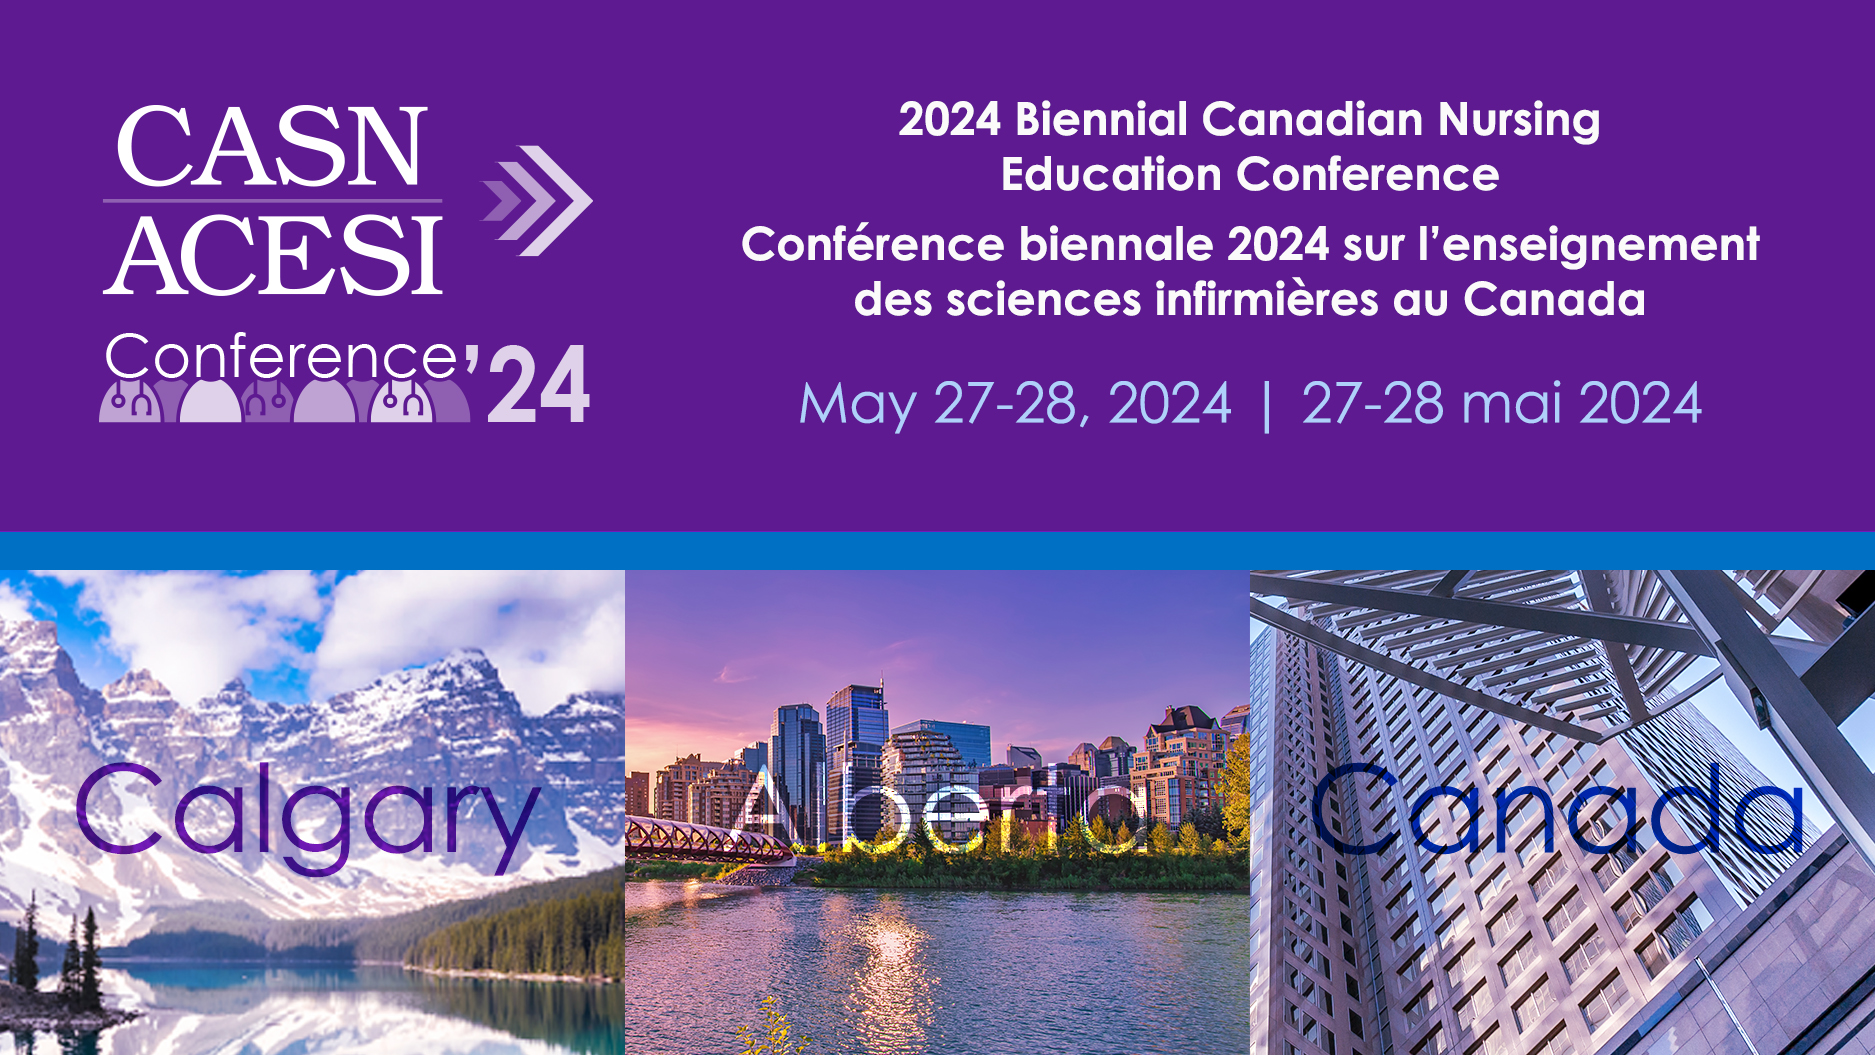 La Conférence biennale 2024 sur l’enseignement des sciences infirmières au Canada, de l’ACESI